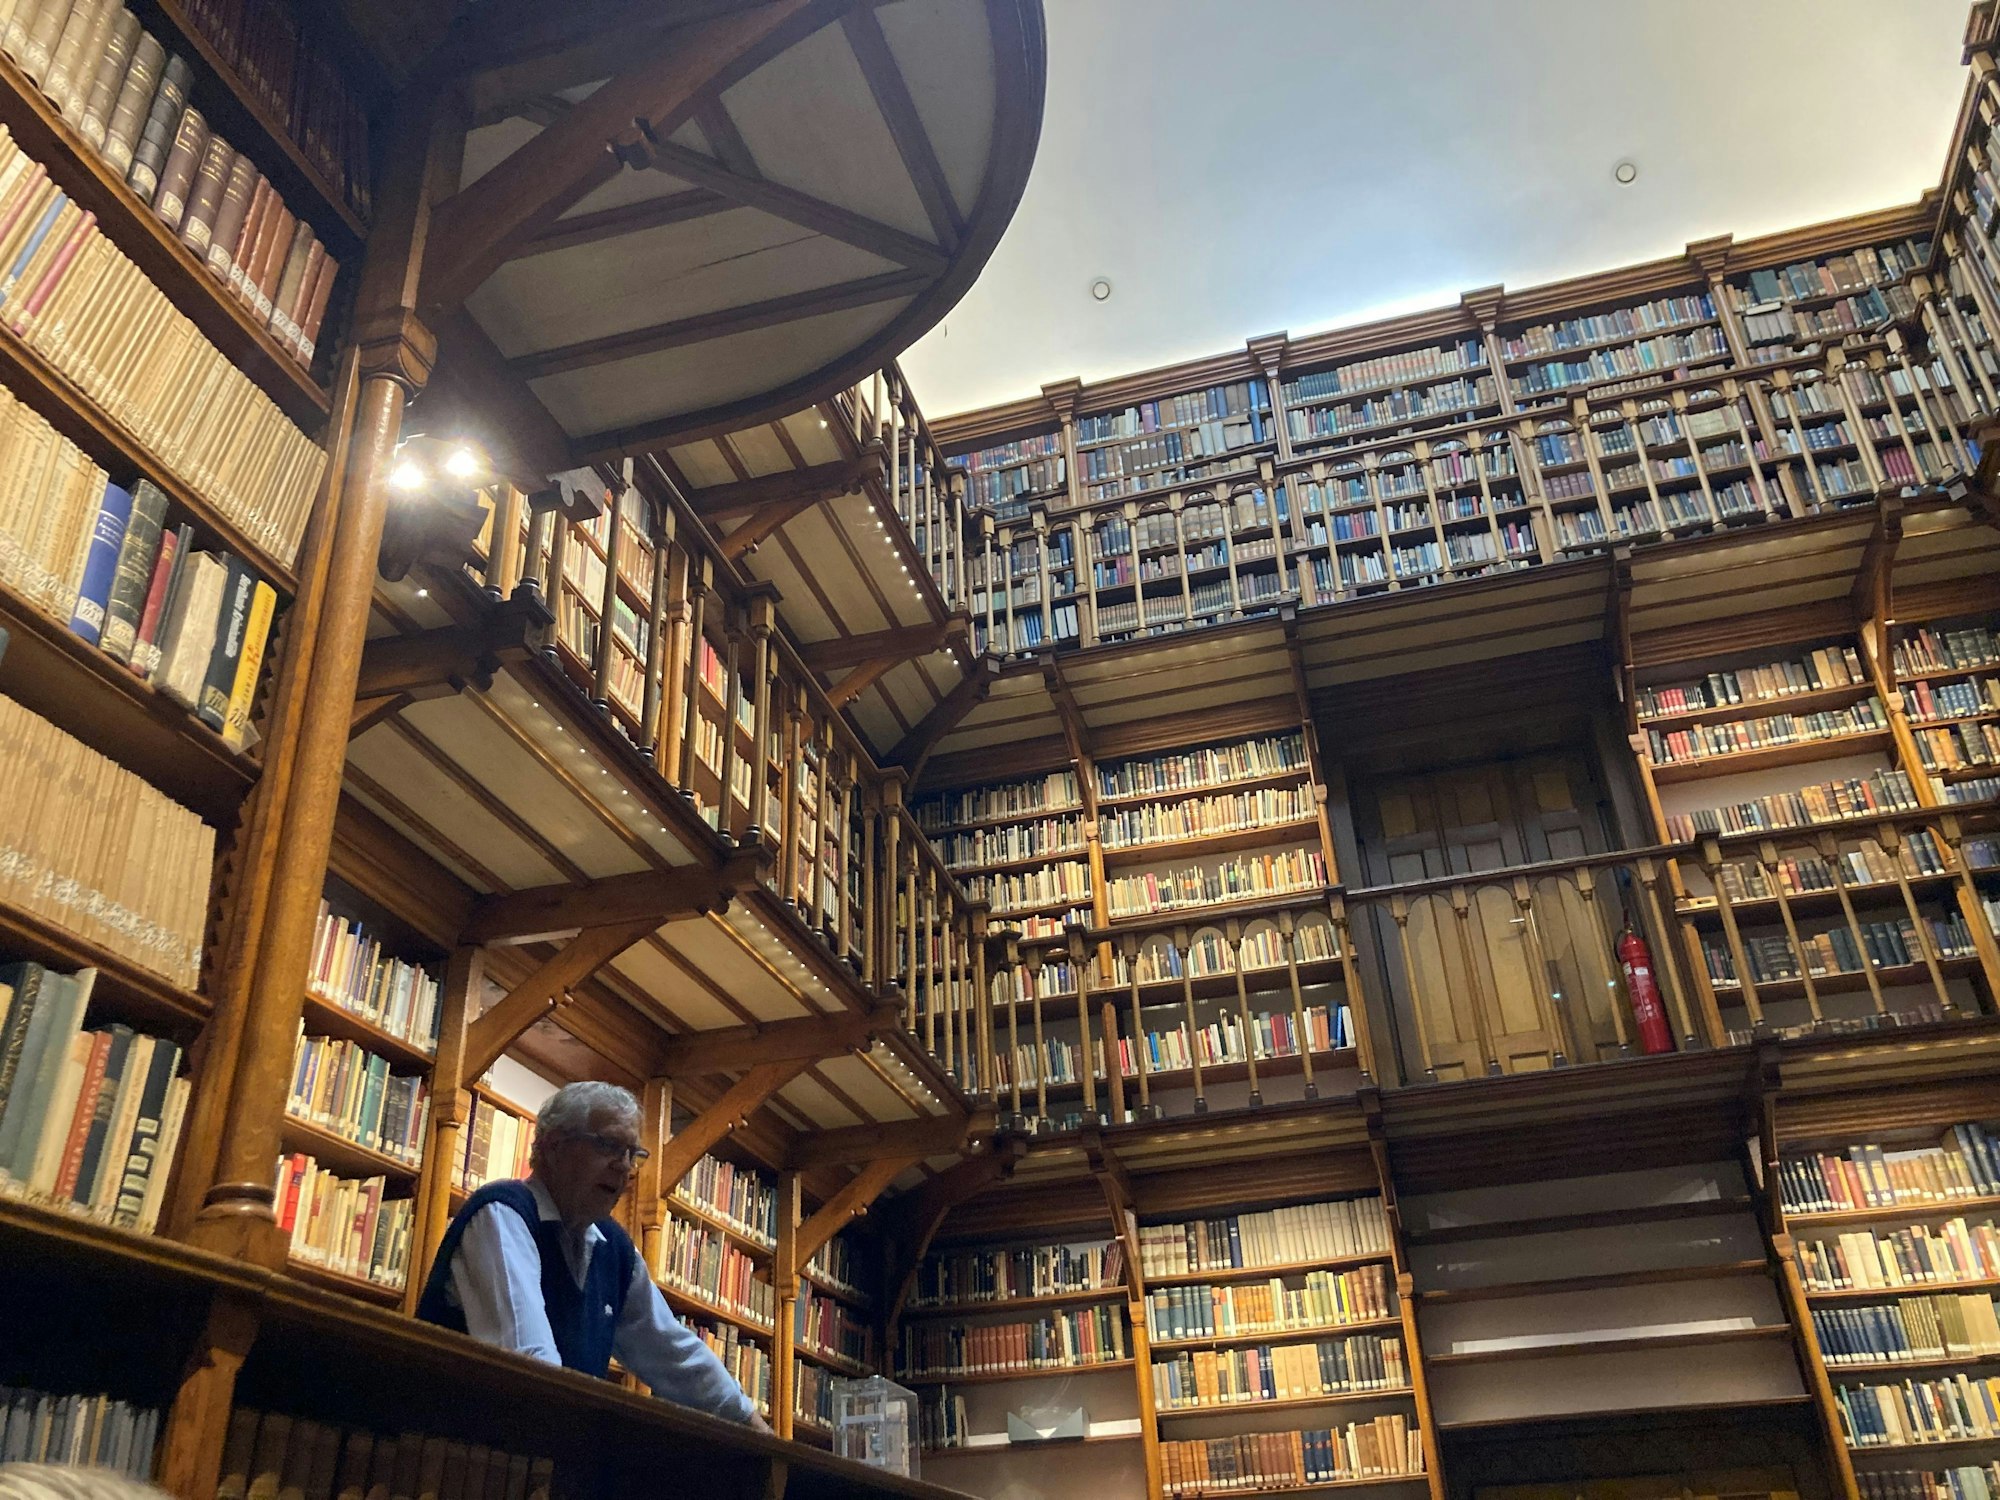 Holzbalustraden und Tausende alter Bücher reichen bis unter die Decke der Bibliothek.